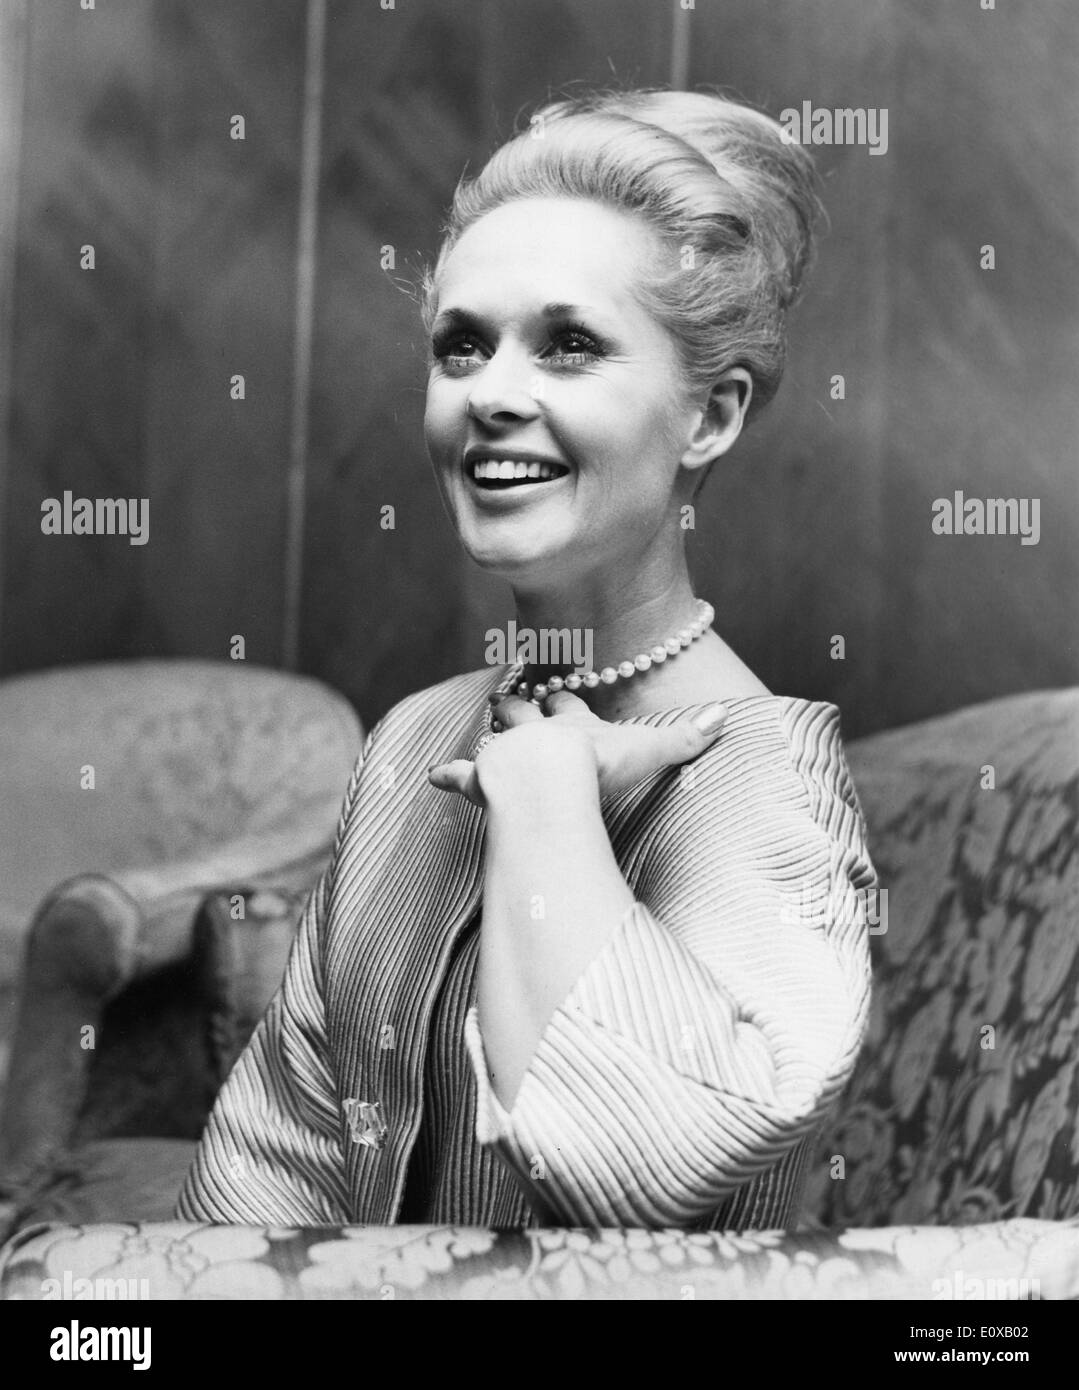 Mar. 1, 1966 - Londres, Angleterre, Royaume-Uni - Actrice TIPPI HEDREN sourit lors d'une conférence de presse à l'Hôtel Dorchester, avant de commencer le tournage de son dernier film, "La Comtesse de Hong Kong", dans lesquels elle joue l'épouse de l'acteur Marlon Brando. Banque D'Images